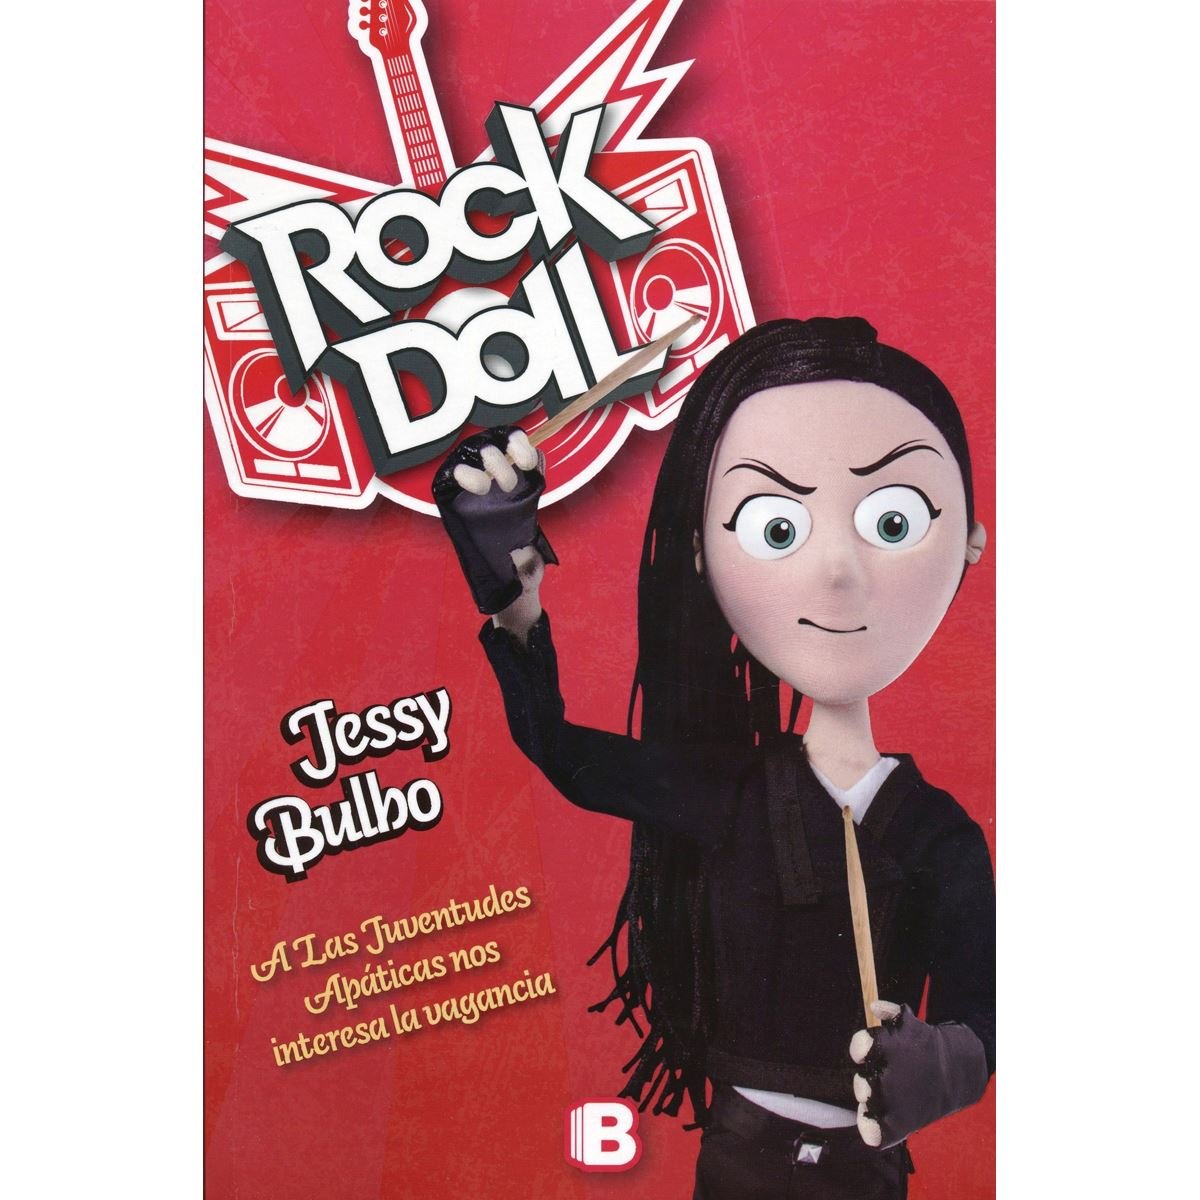 Rock Doll